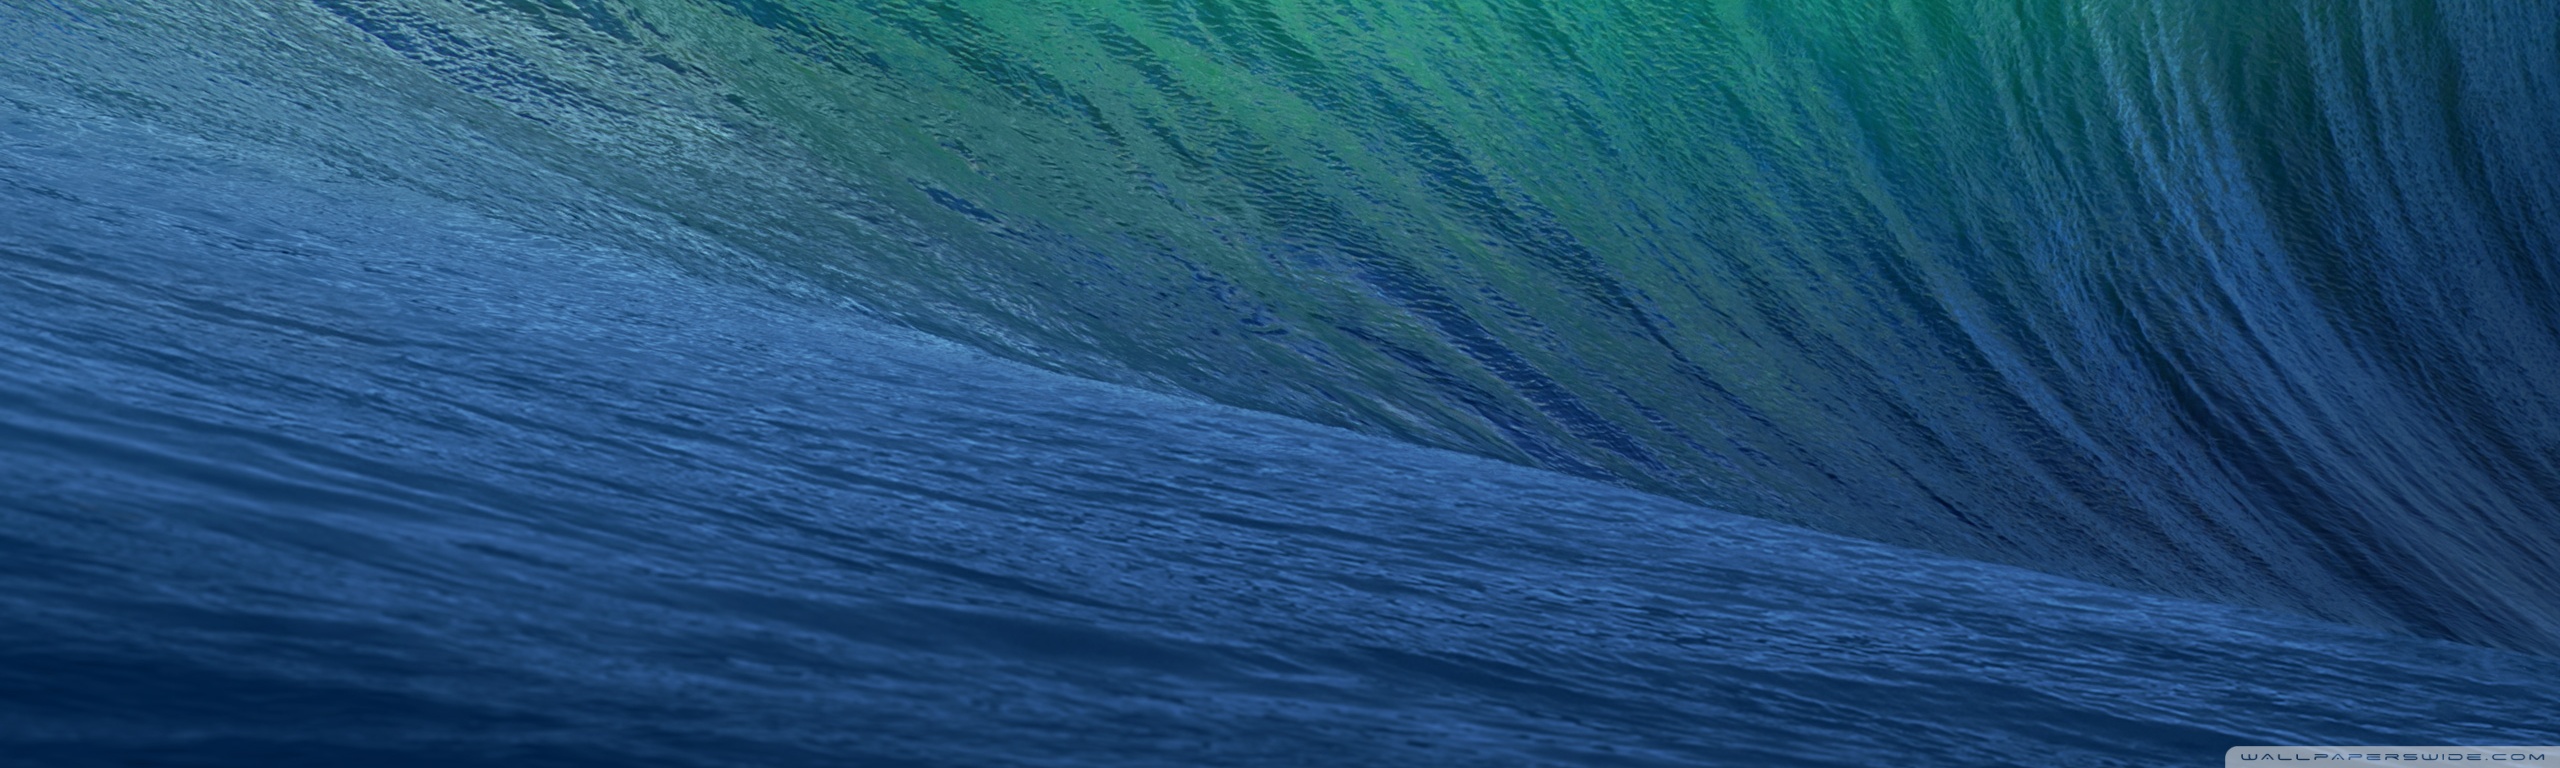 os x mavericks fondo de pantalla,azul,verde,agua,ola,turquesa